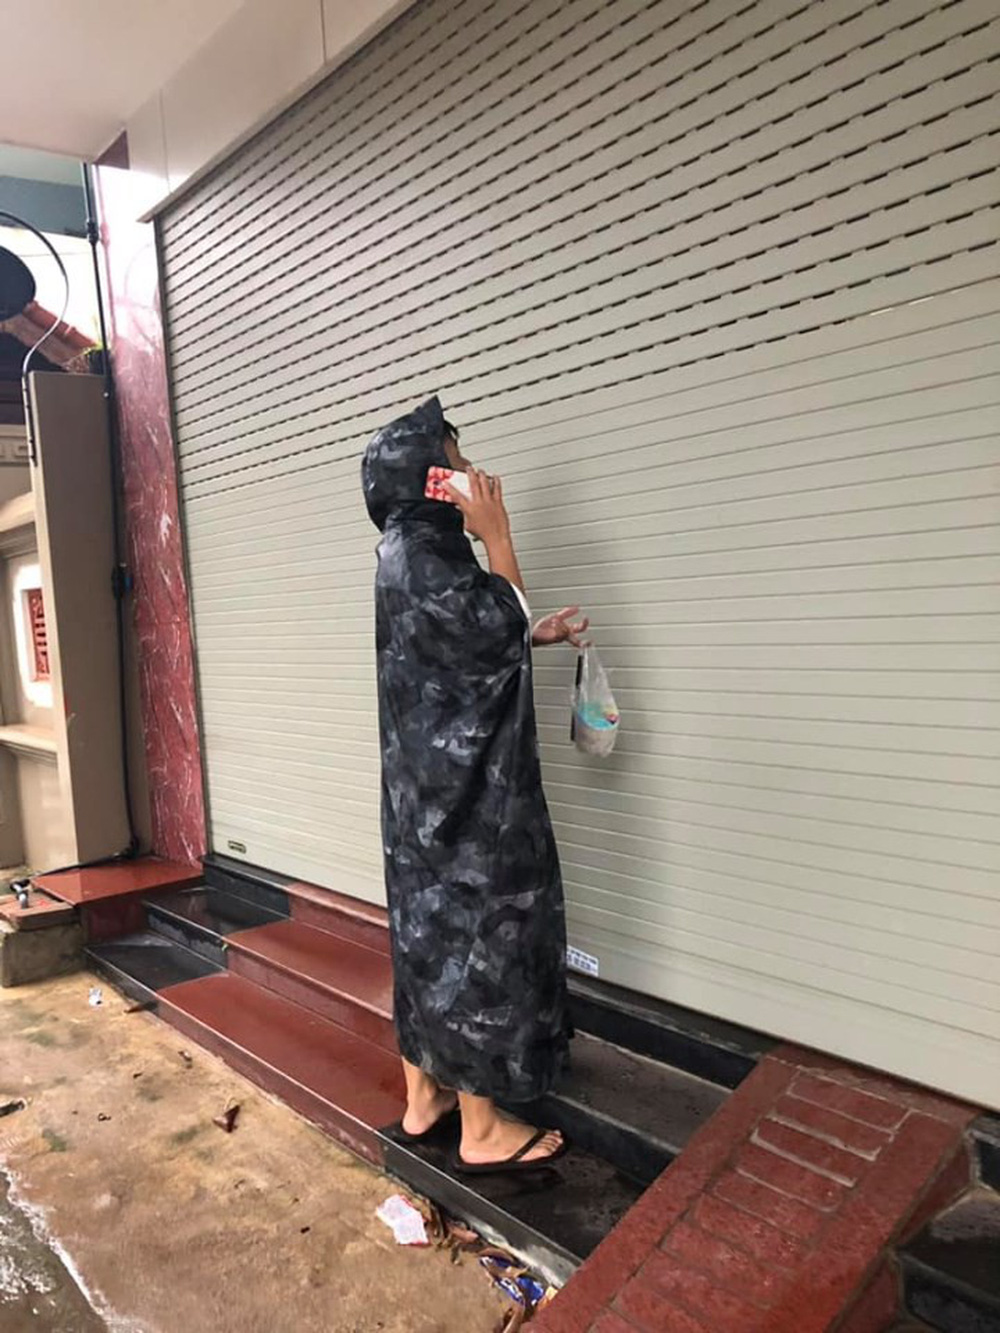 Đội mưa mang trà sữa cho bạn gái, chàng trai vẫn phải ôm mặt ngồi đợi cửa vì lý do khó hiểu - Ảnh 1.